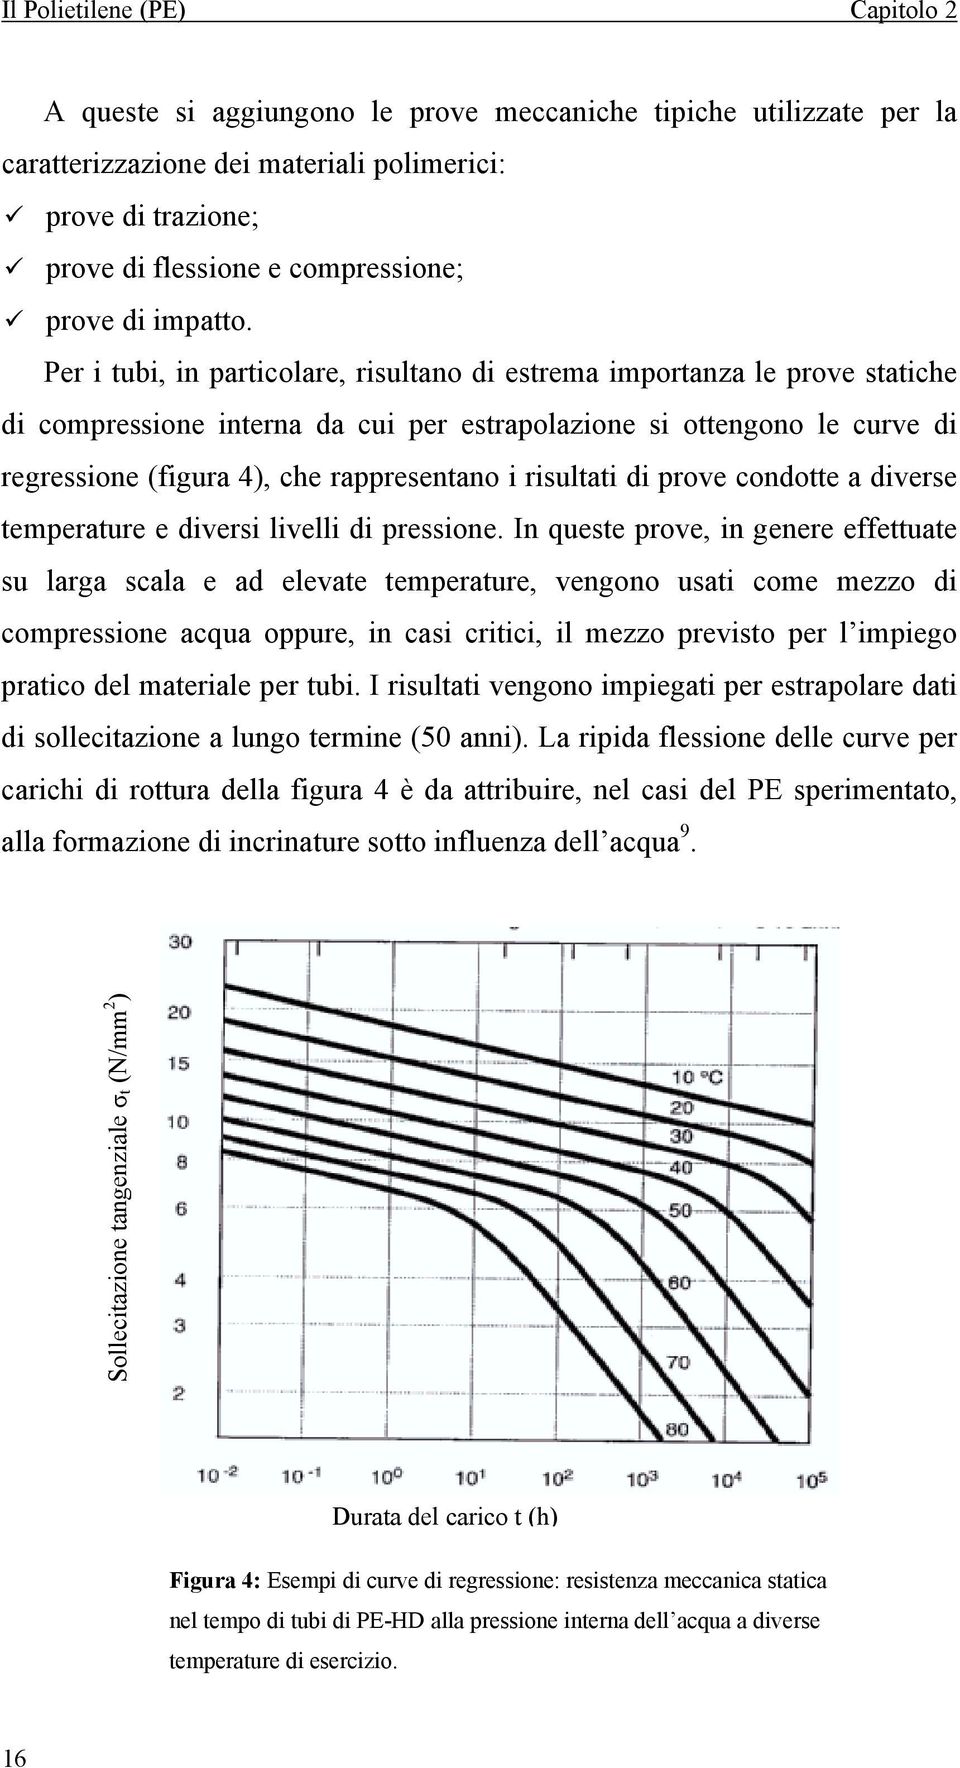 Per i tubi, in particolare, risultano di estrema importanza le prove statiche di compressione interna da cui per estrapolazione si ottengono le curve di regressione (figura 4), che rappresentano i